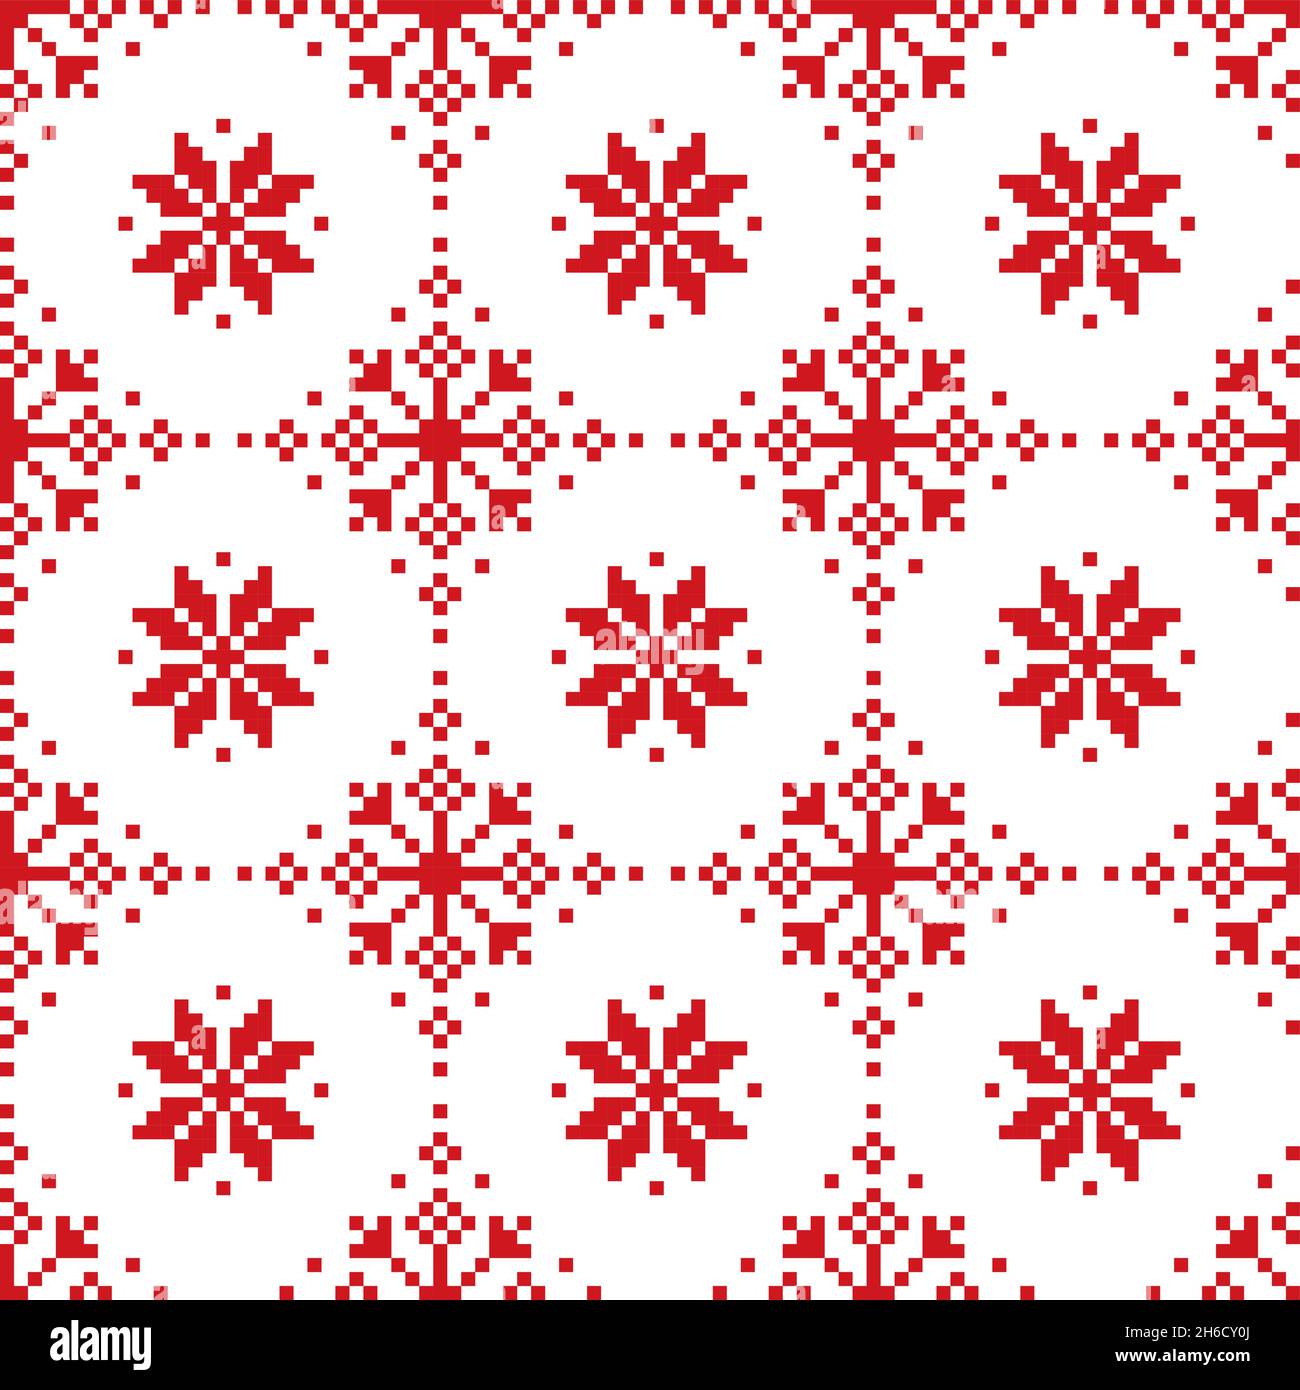 Weihnachten Winter Vektor nahtloses rot-weißes Muster - skandinavisches und nordisches Kreuz-Stich Schneeflocken-Design Stock Vektor